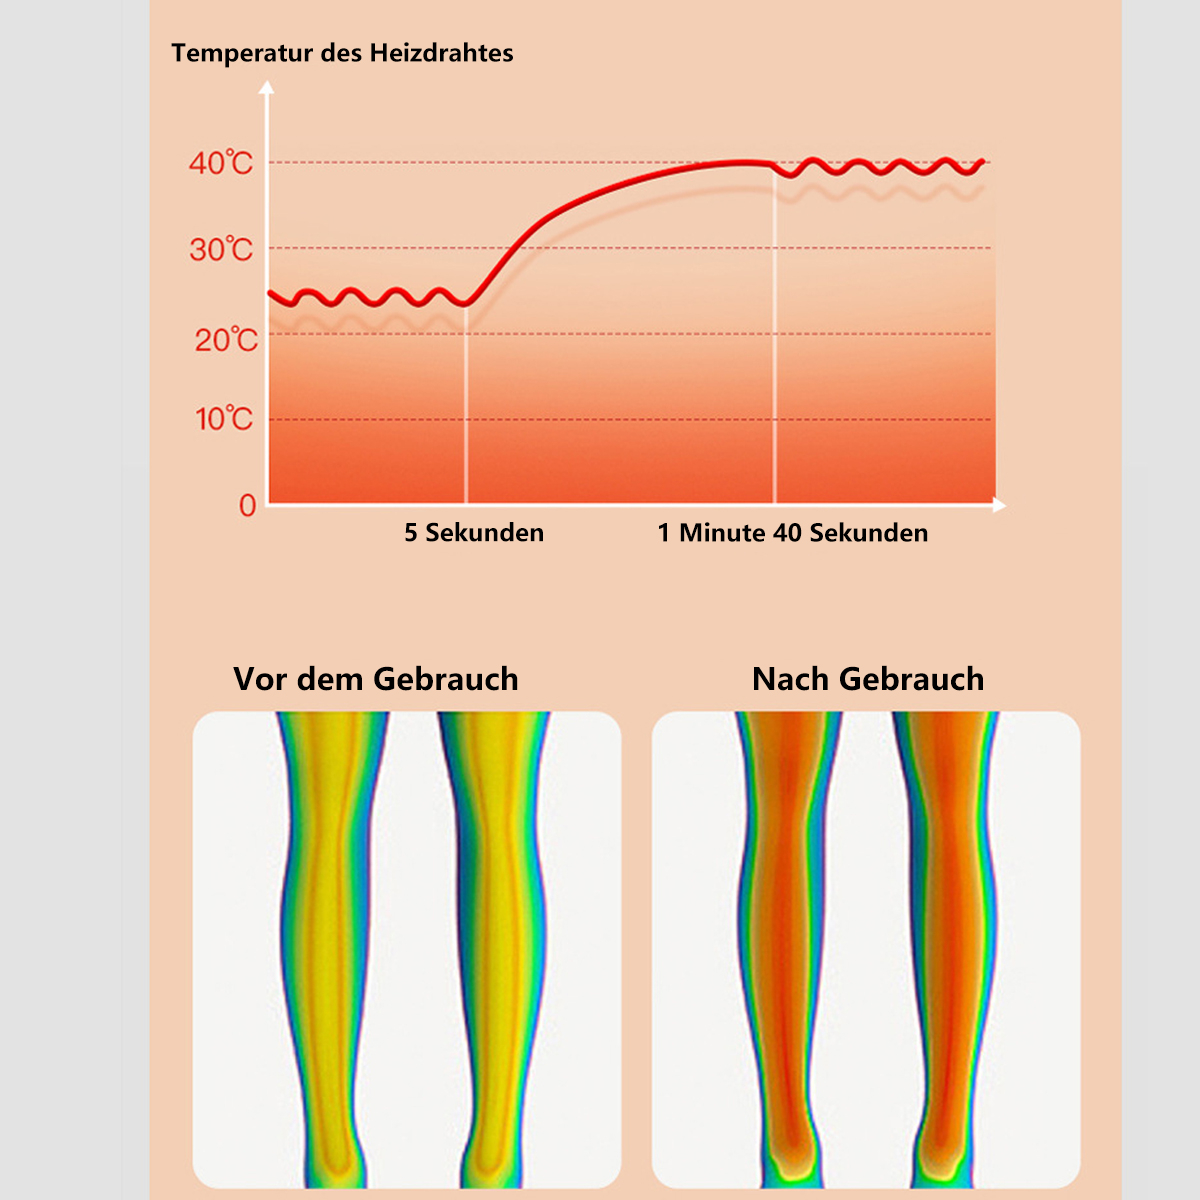 BYTELIKE Elektrisches Wärmendes Massagegerät Massagegerät Kniemassagegerät für kalte Beine